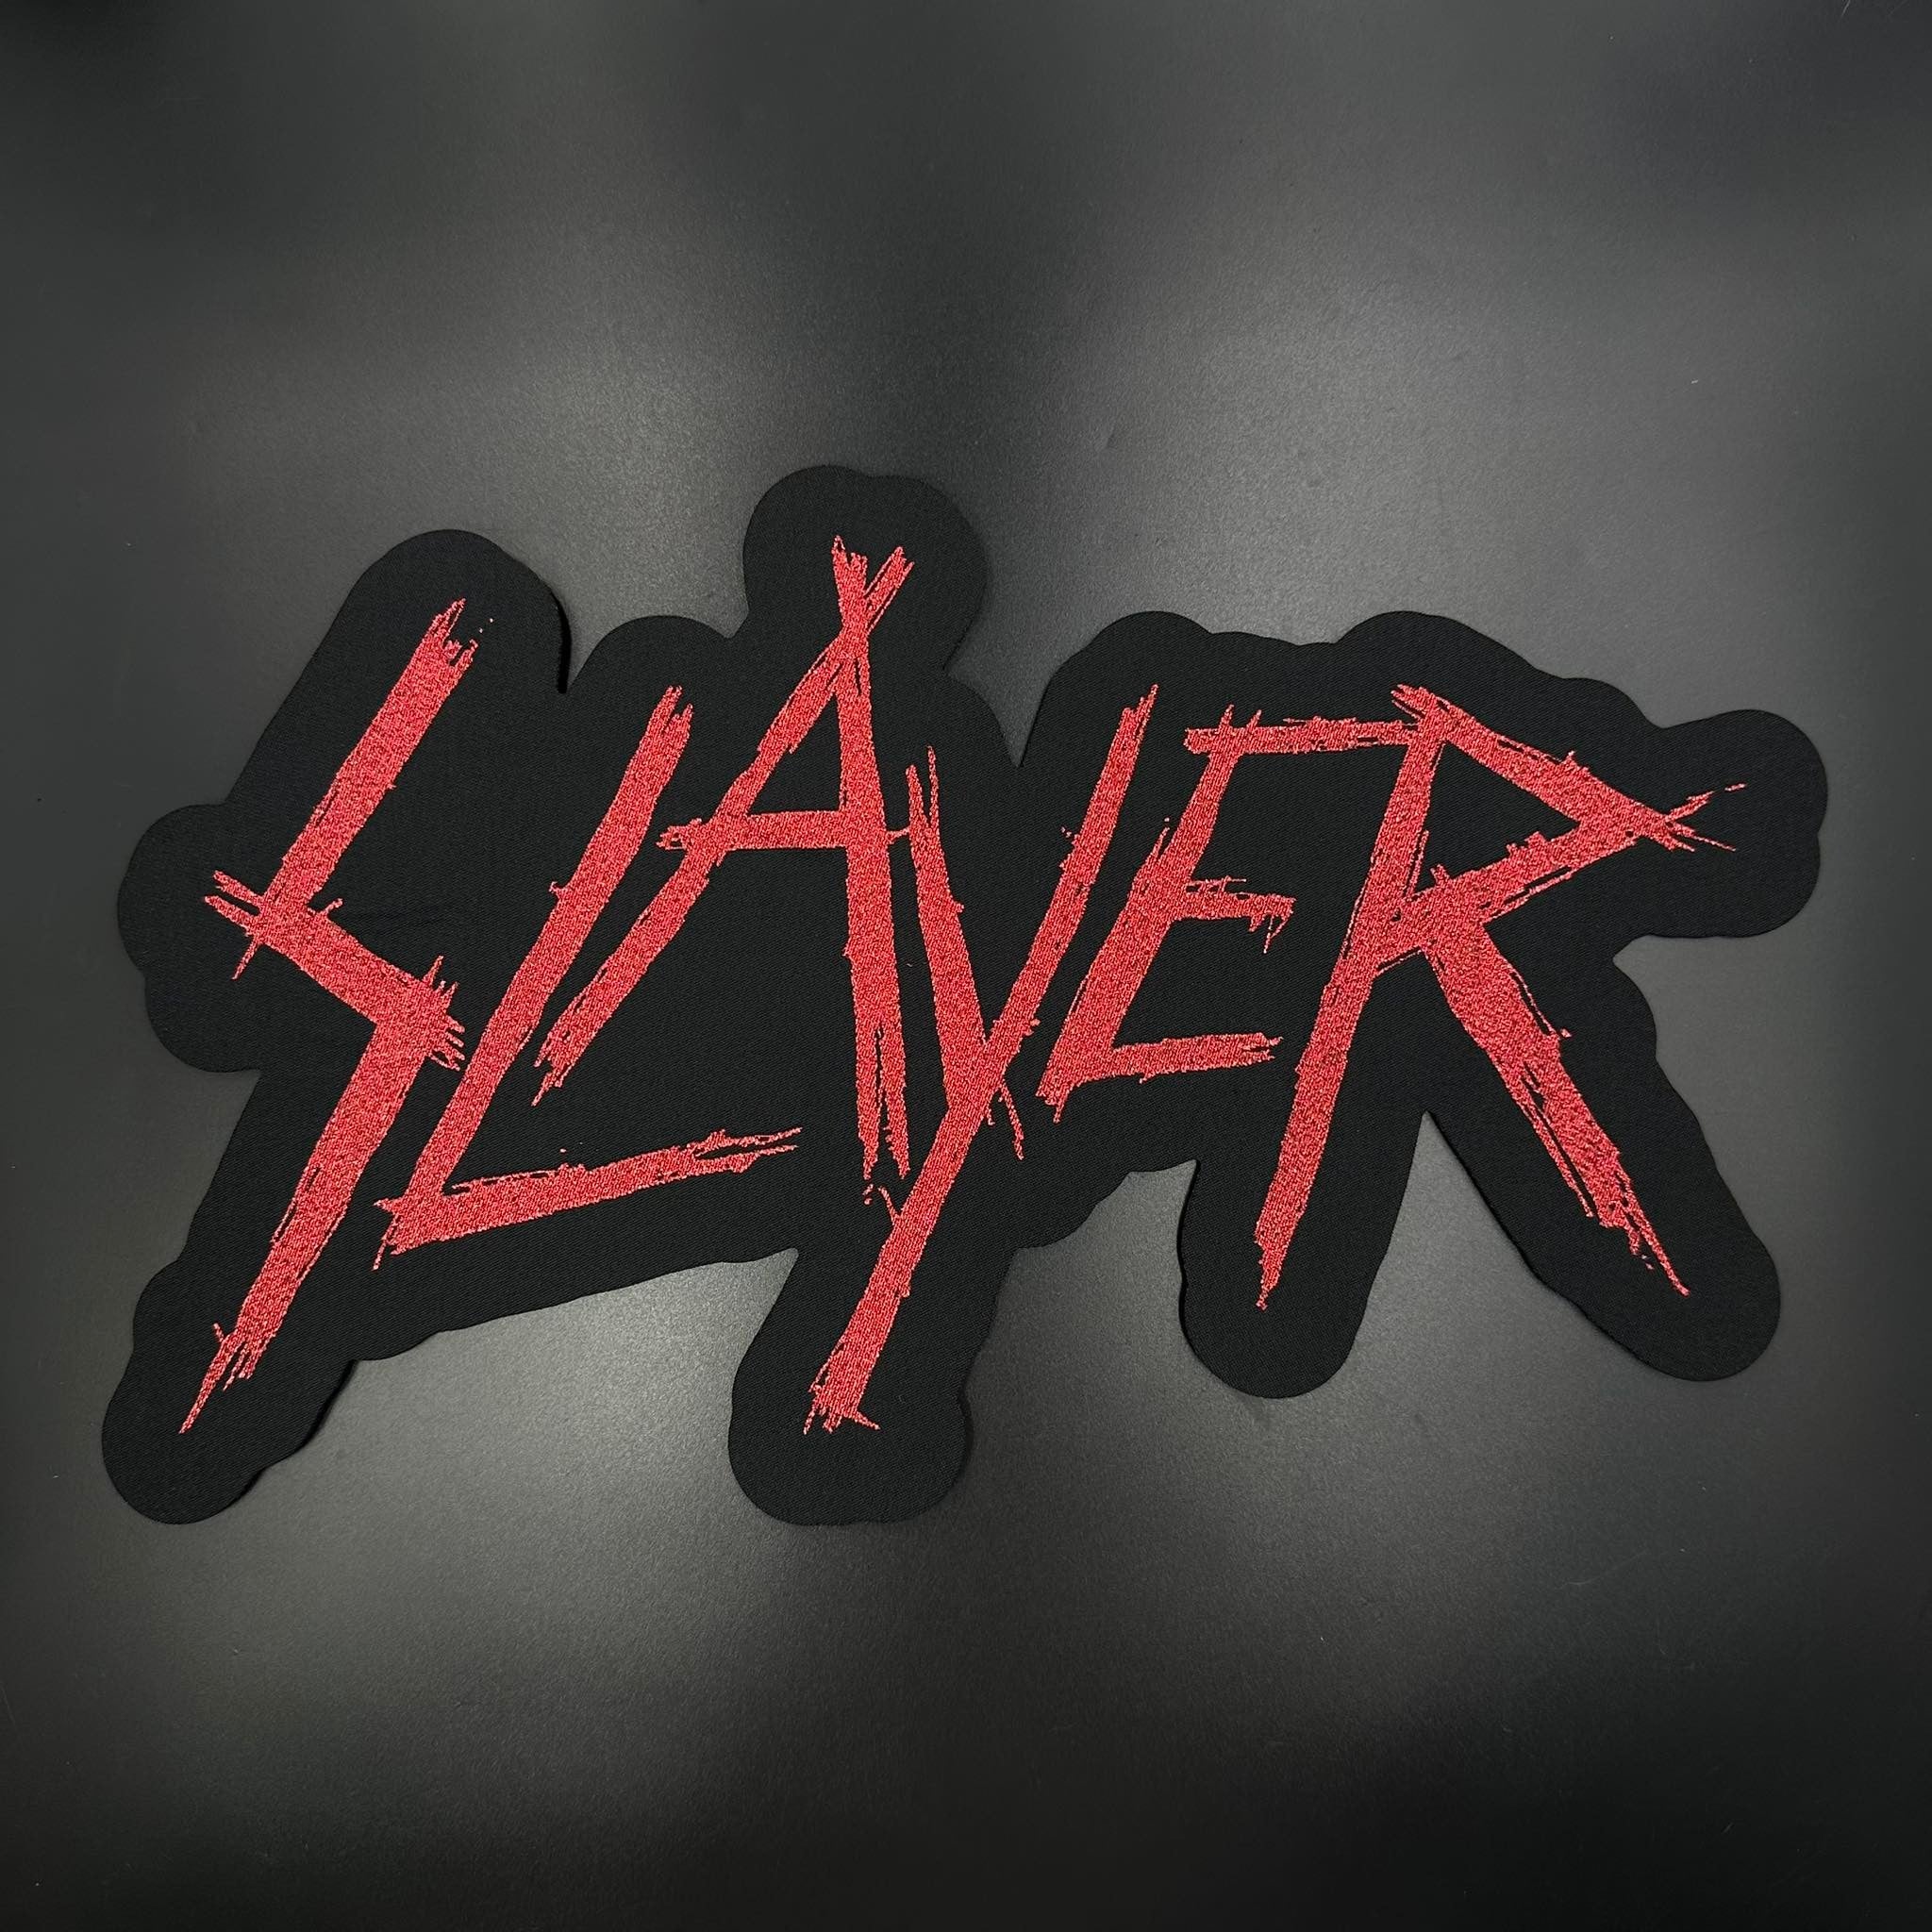 slayer logo